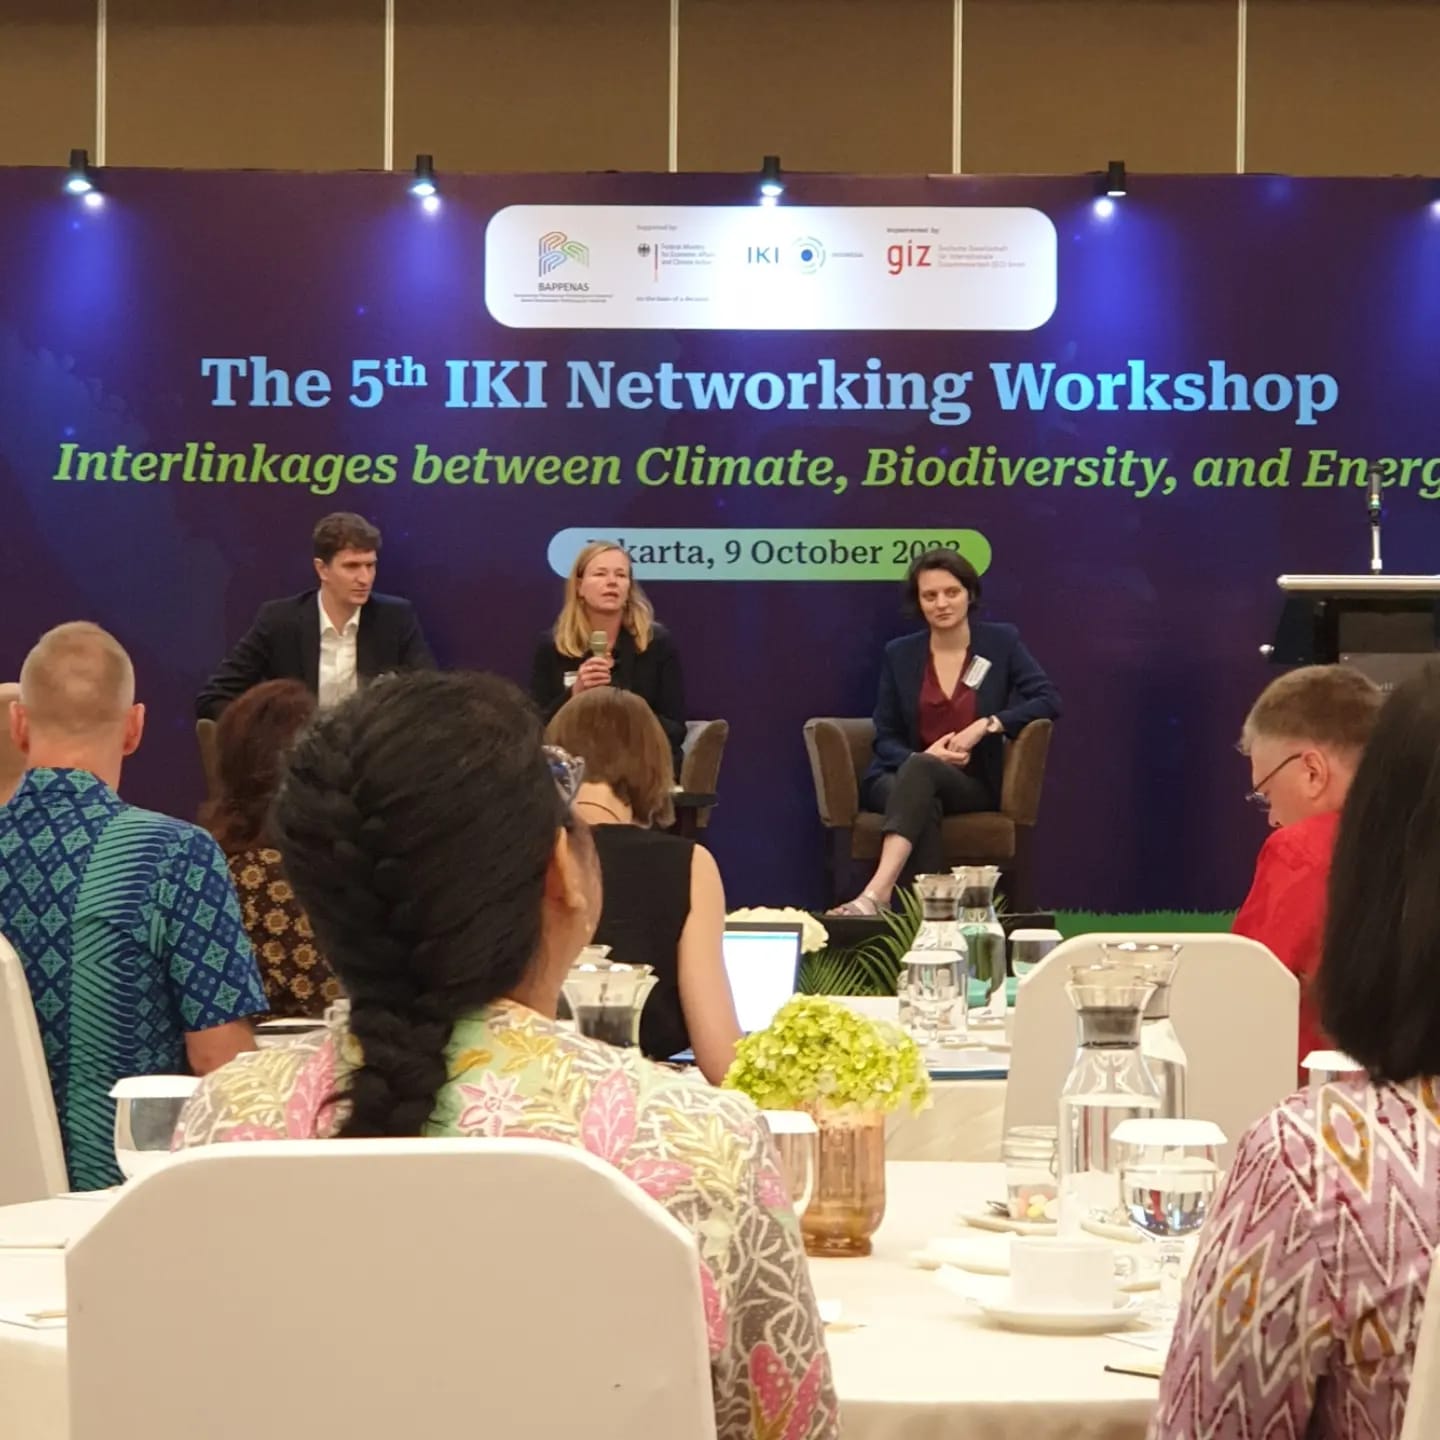 The 5th IKI Networking Workshop: Membangun kesuksesan bersama dalam mitigasi, adaptasi, dan konservasi alam